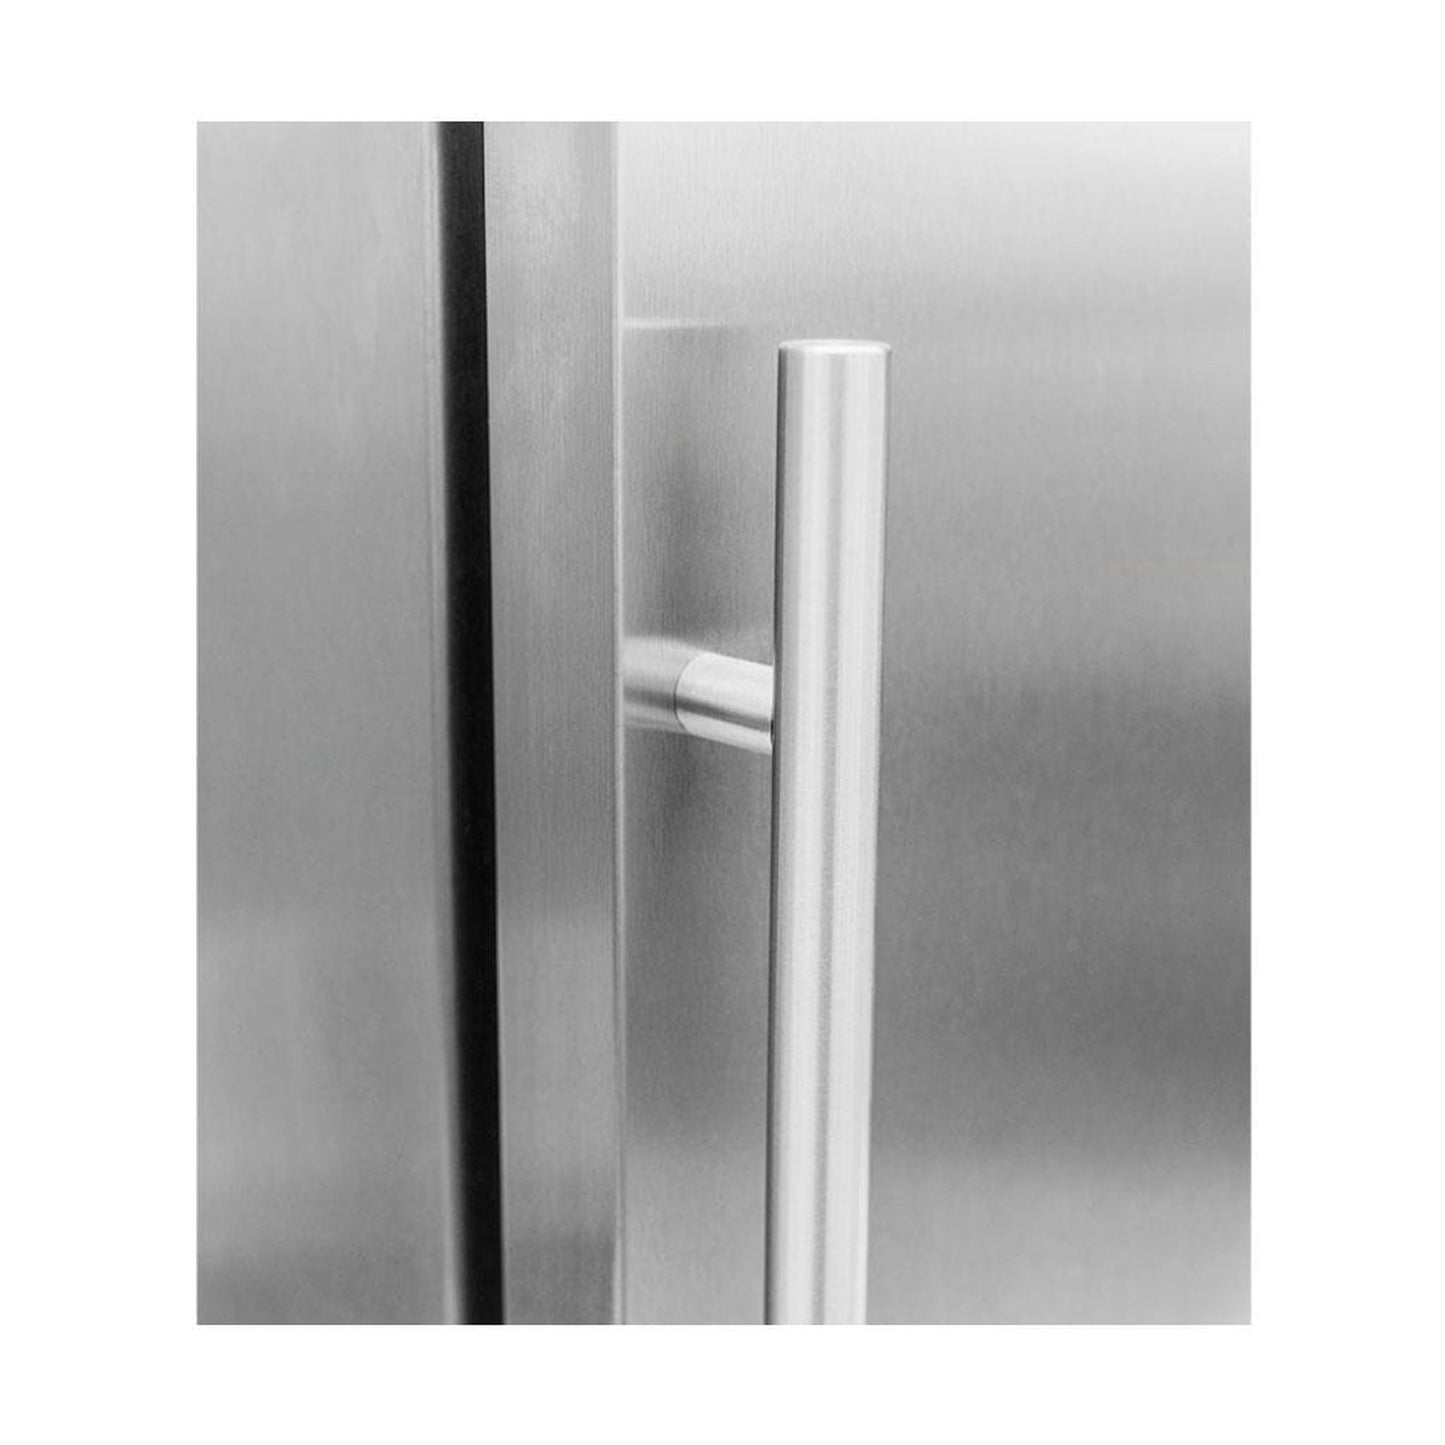 Summerset Refrigerator Door Replacement Accessory